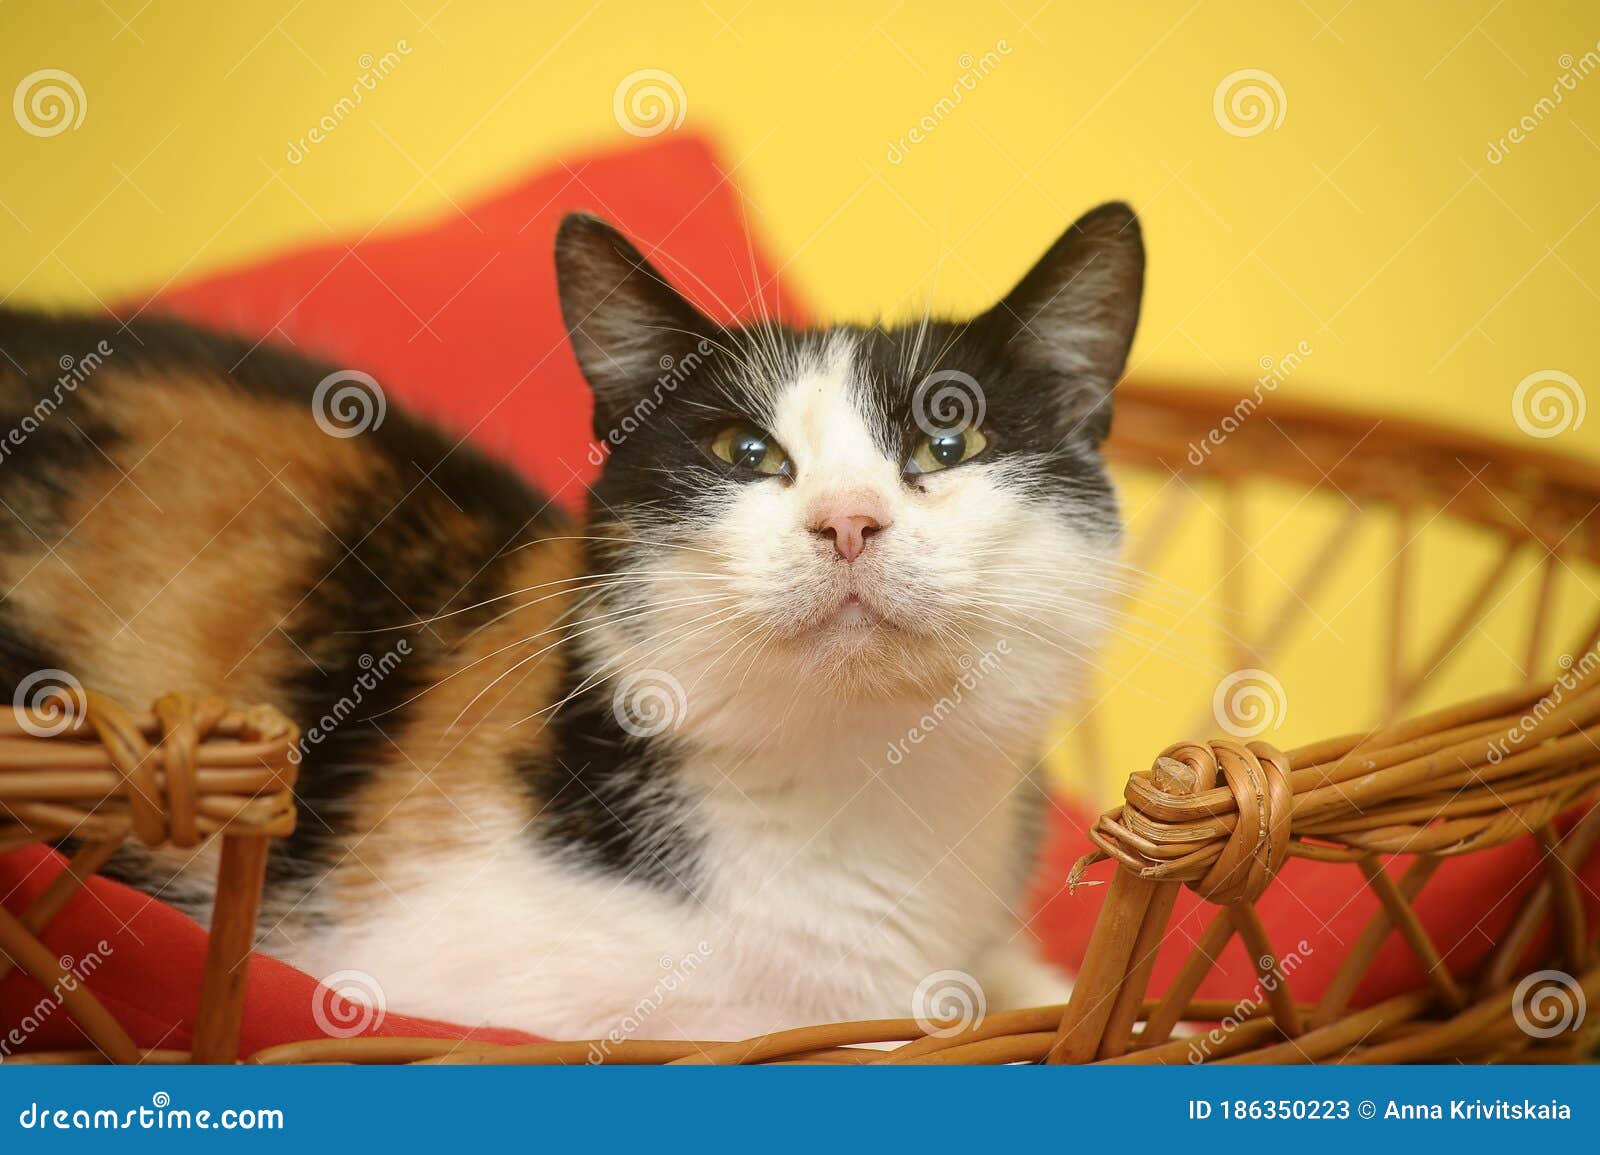 female cat,  cat with three colors